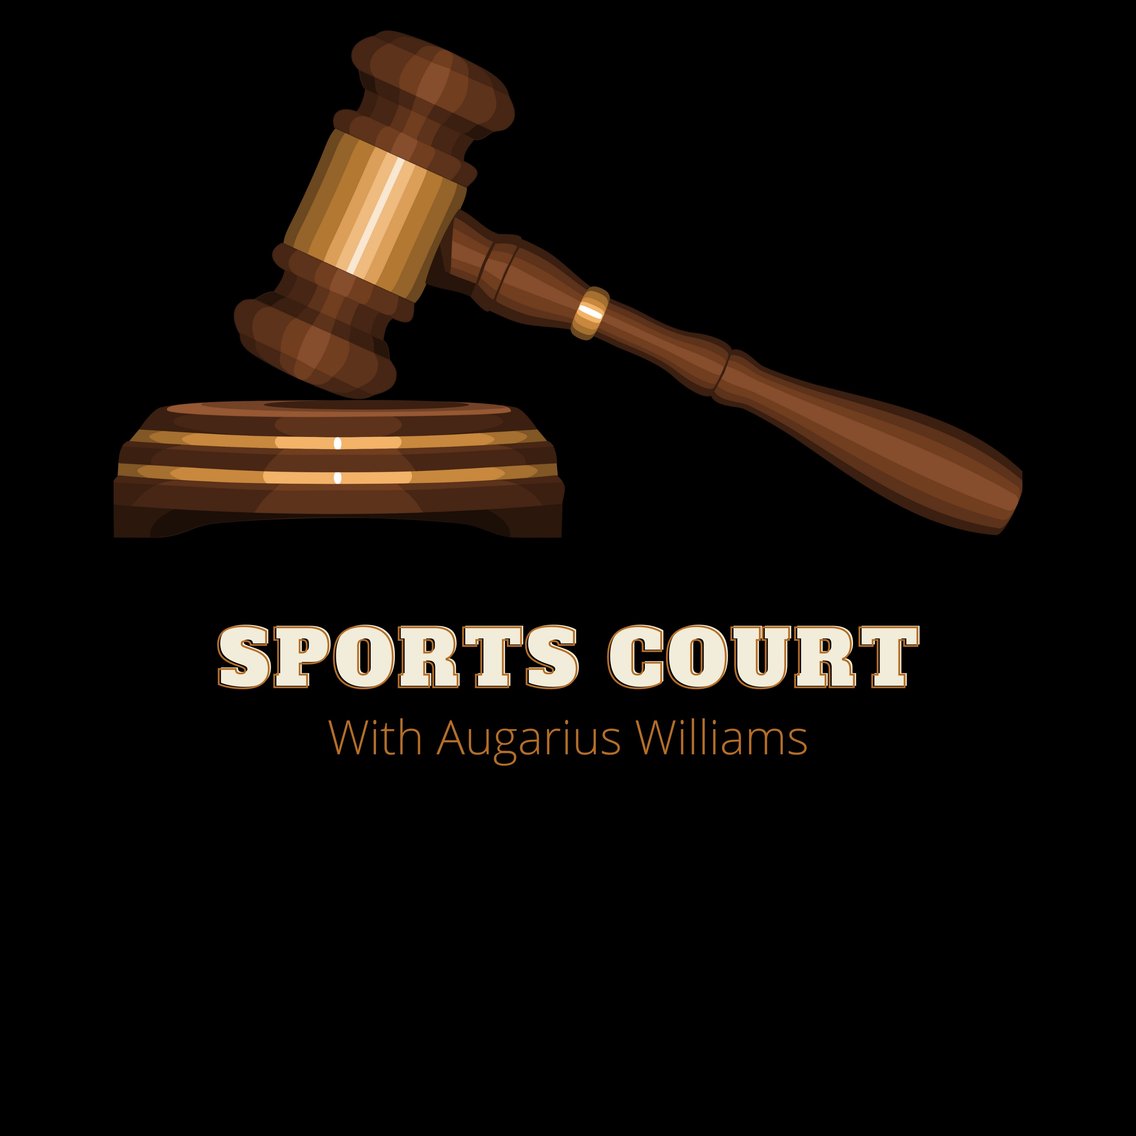 Sports Court - immagine di copertina
